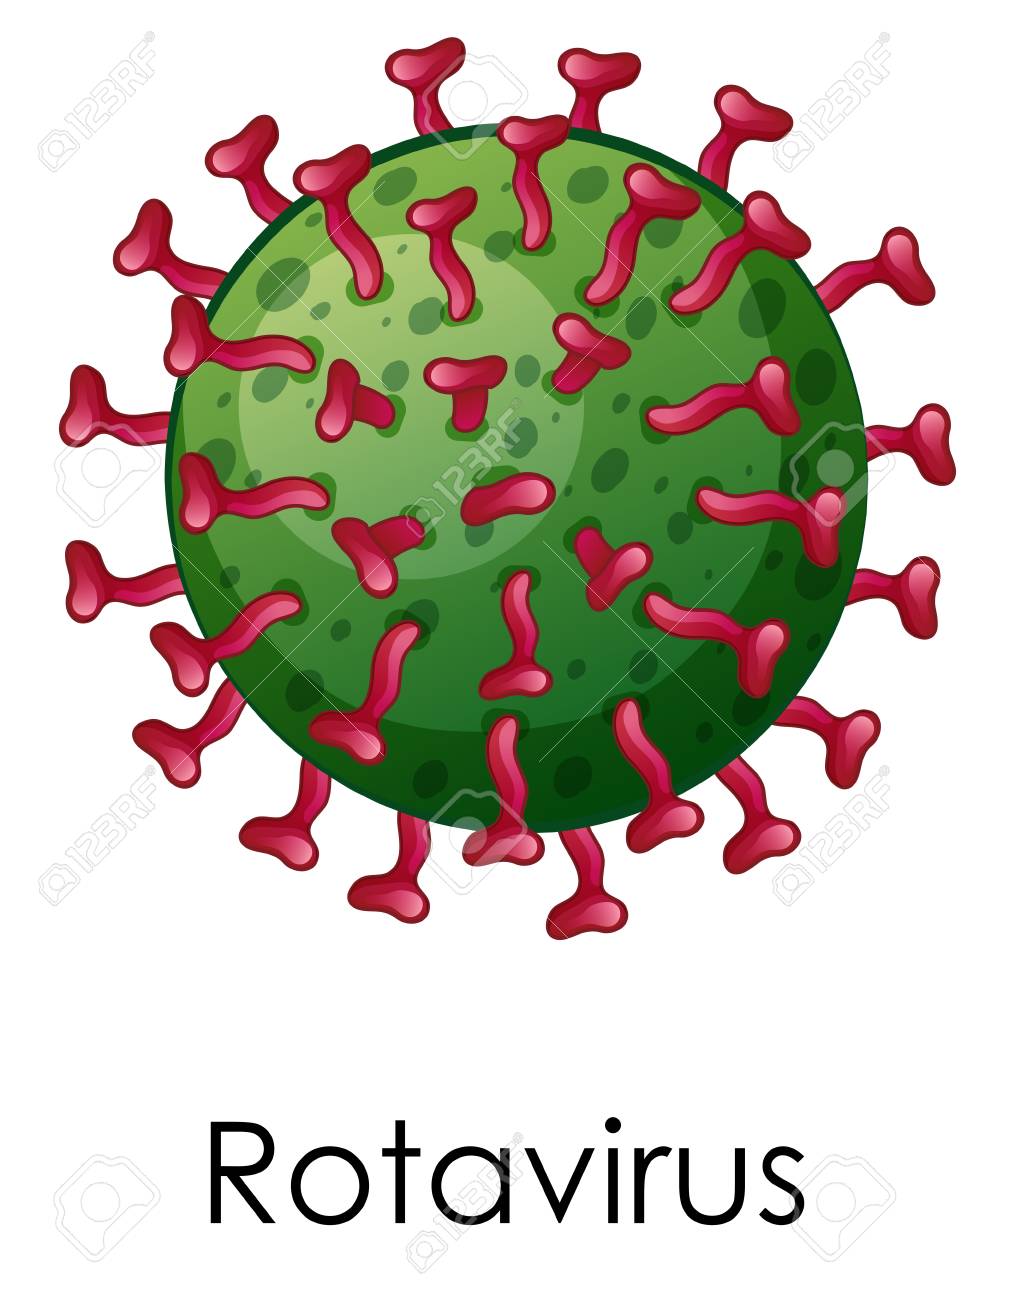 vaccine clipart rotavirus